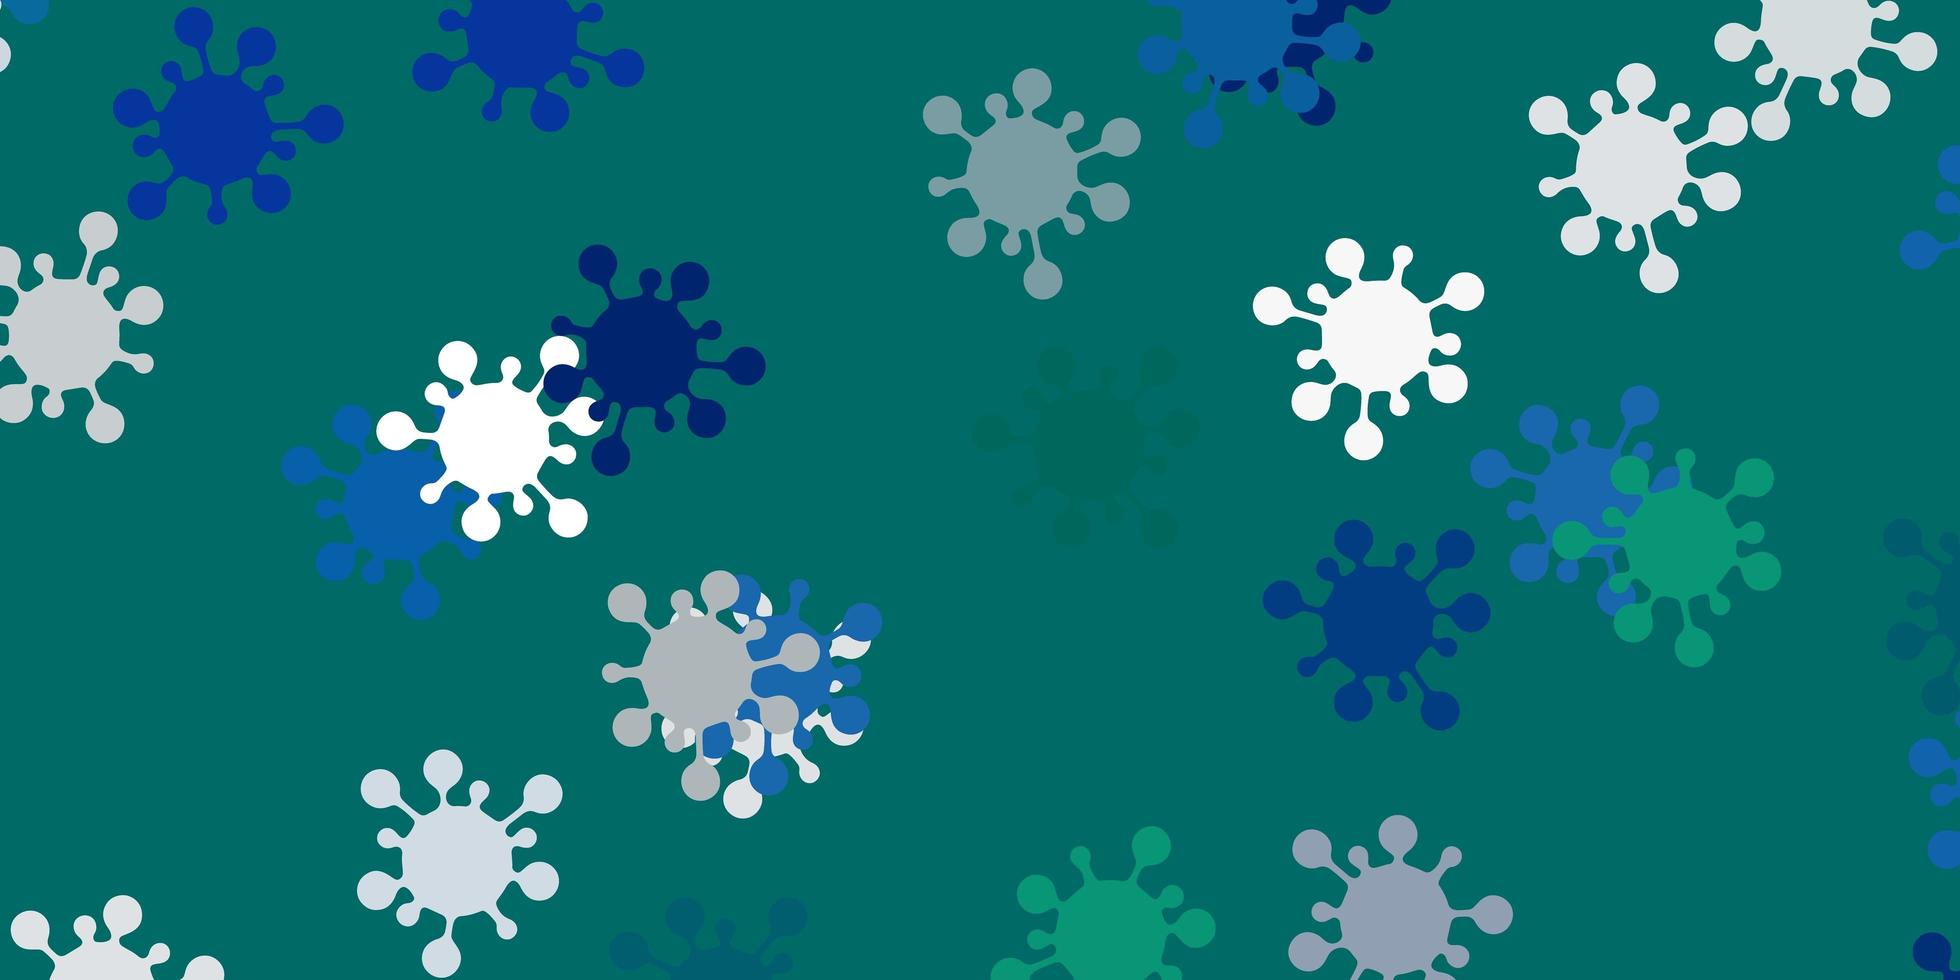 ljusblå, grön vektormall med influensatecken. vektor